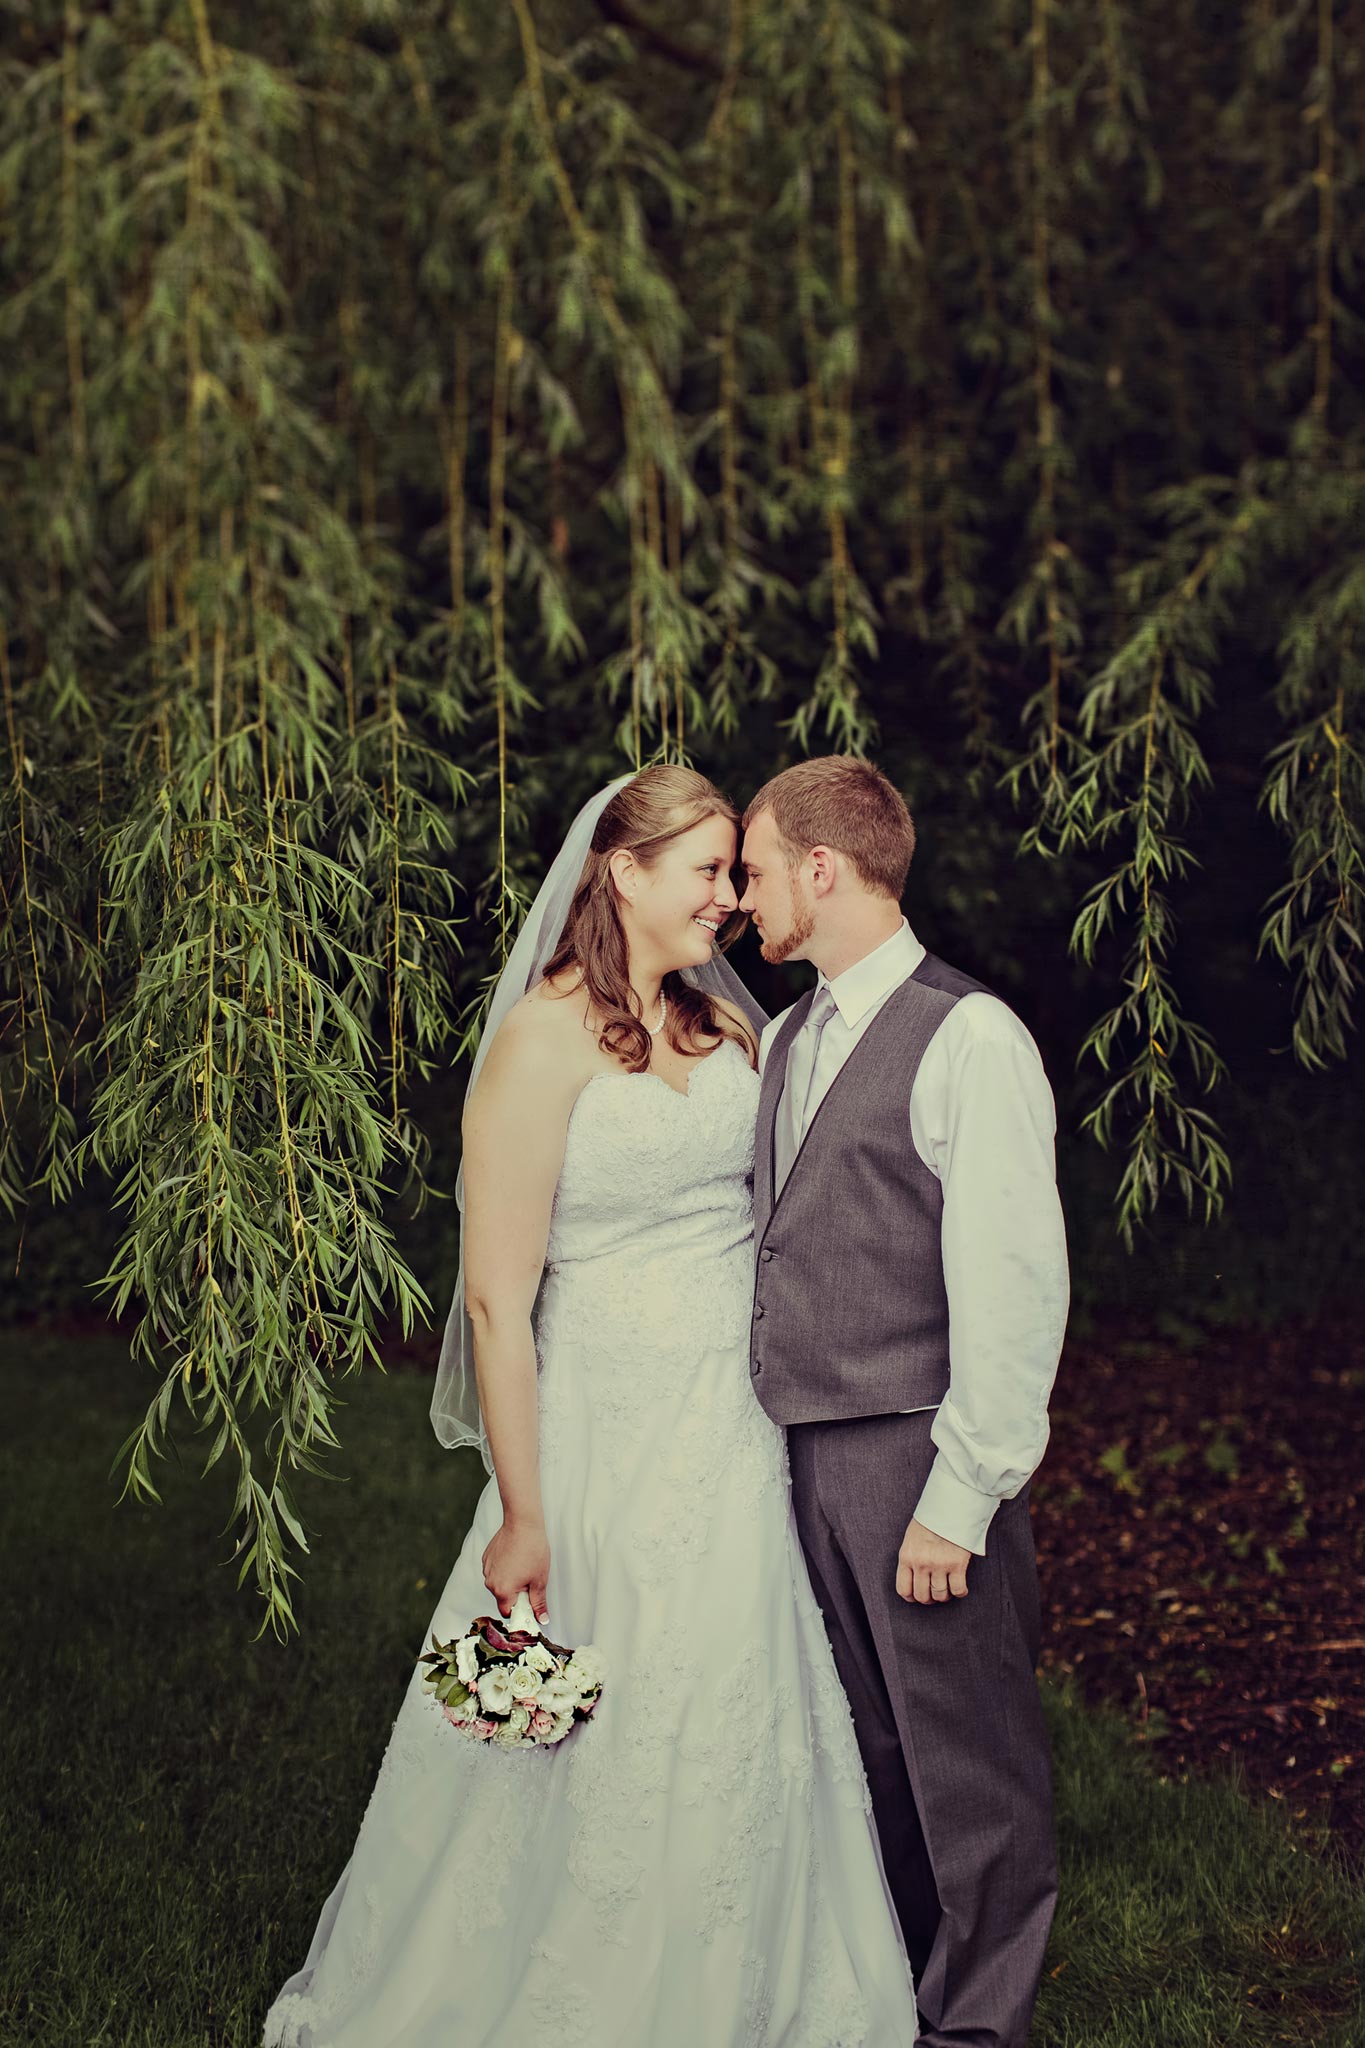 Munson Bridge Wedding in willow tree kissing couple photo james stokes